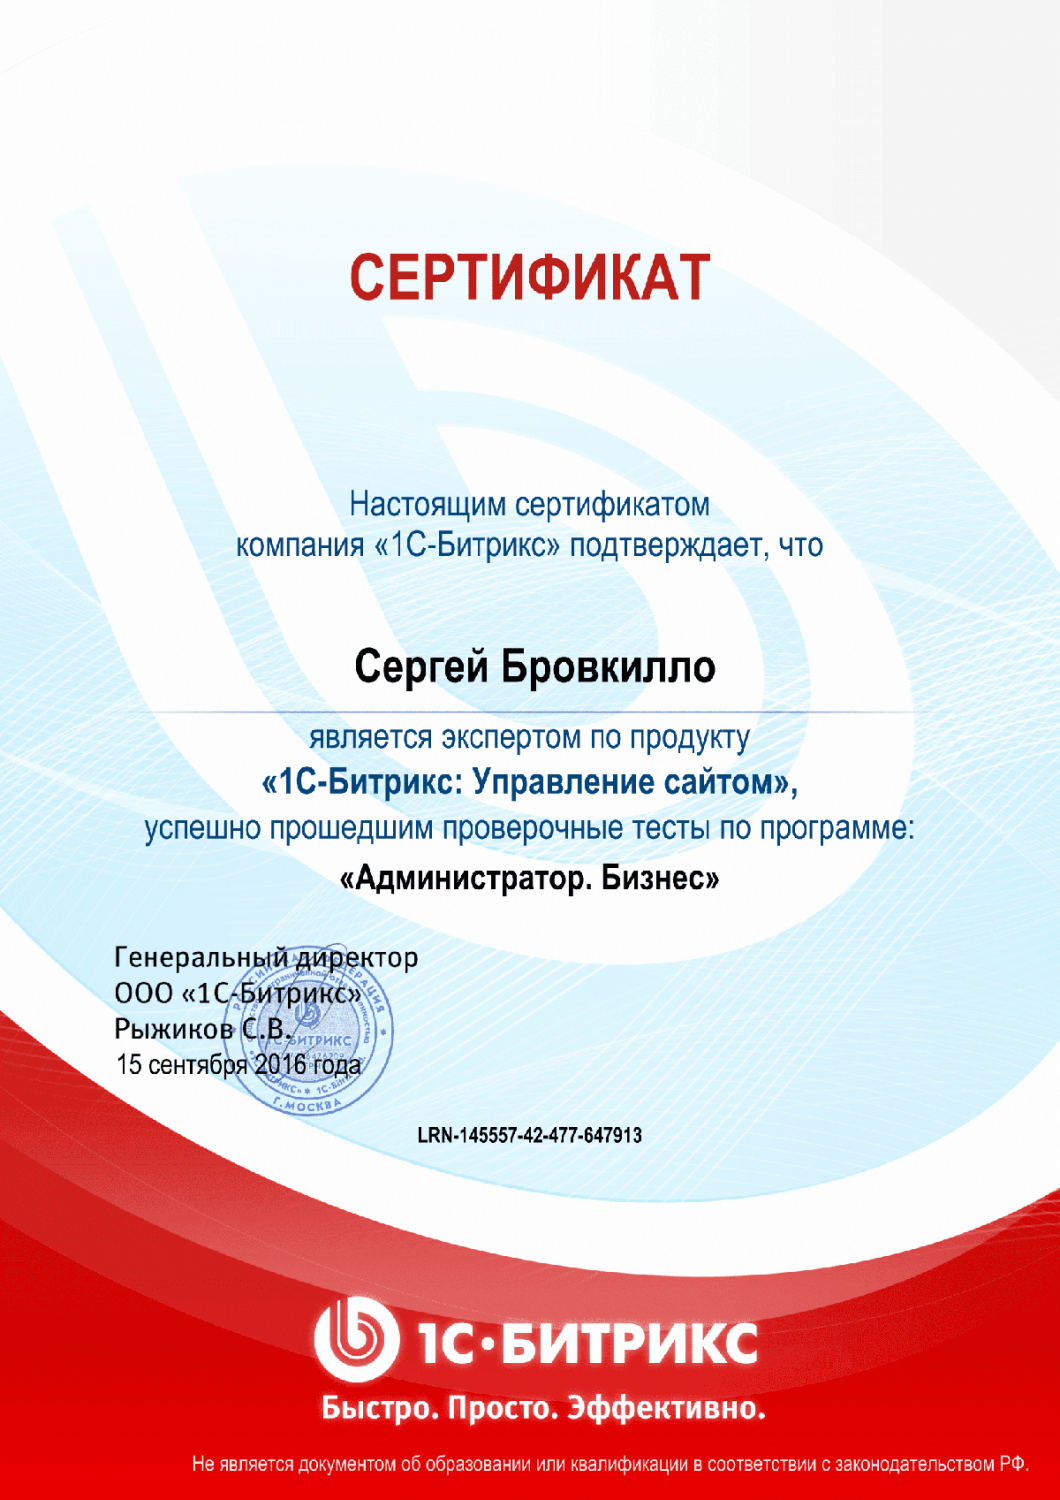 Сертификат эксперта по программе "Администратор. Бизнес" в Новороссийска